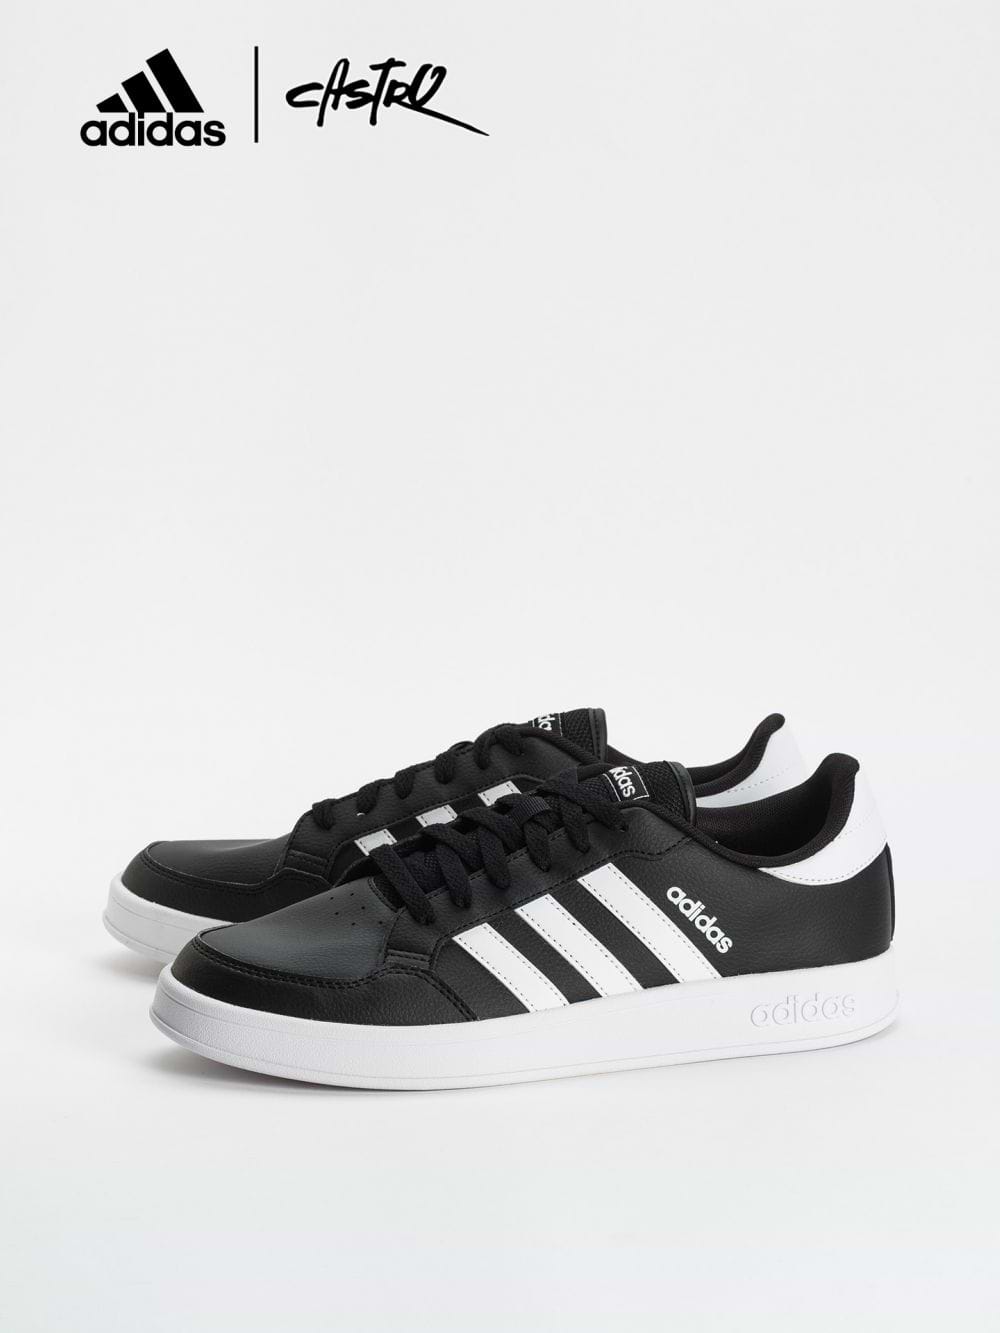 נעלי Adidas שחור ולבן / גברים